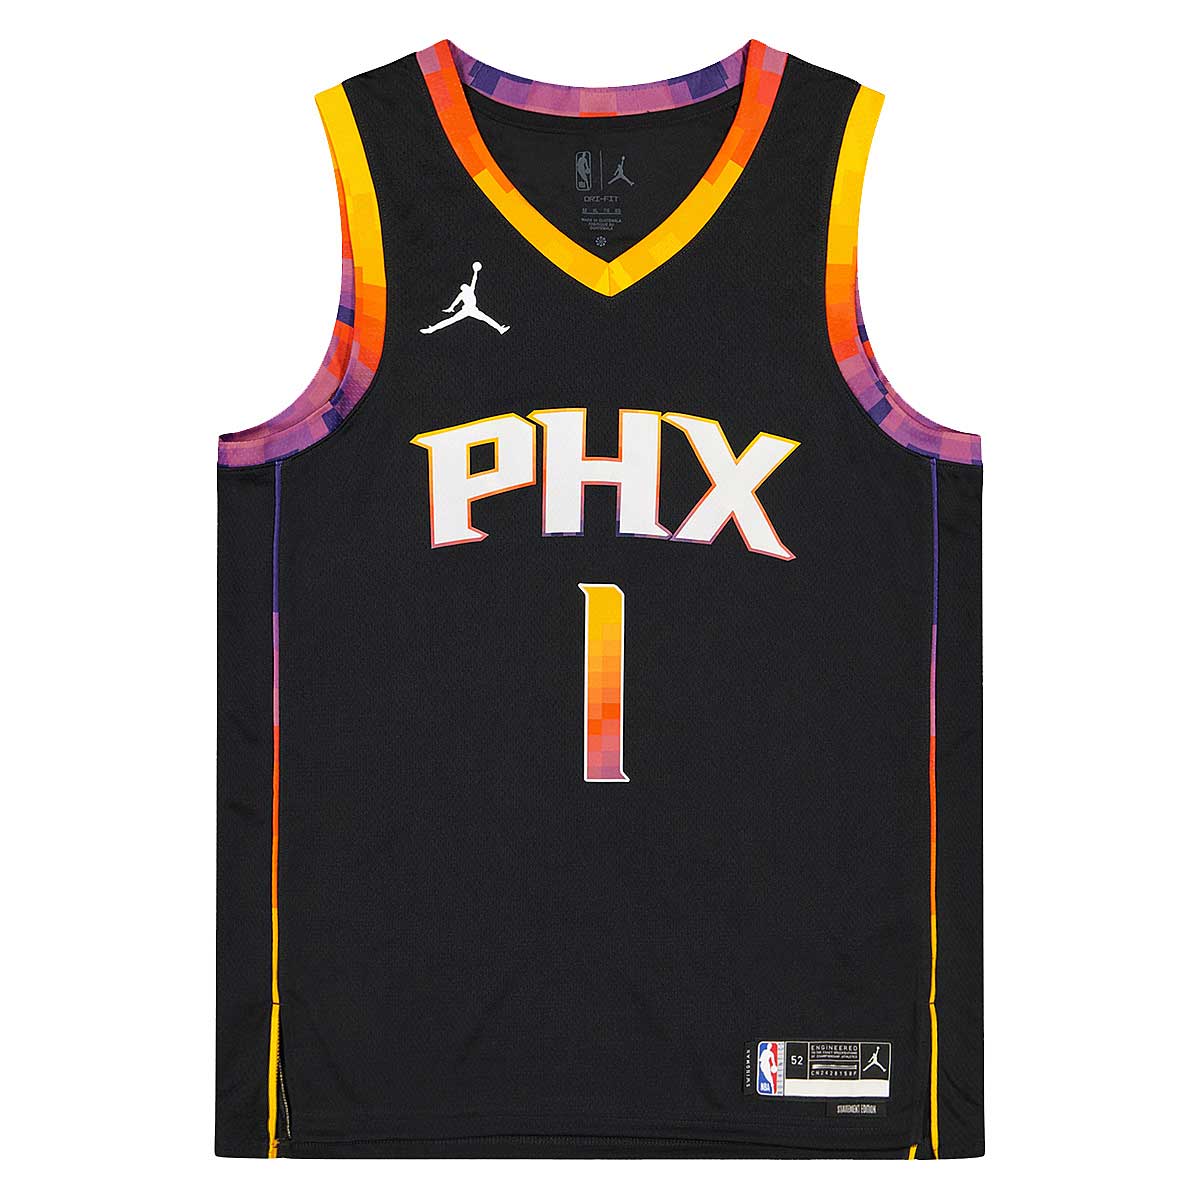 Nike Men's and Women's Devin Booker Orange Phoenix Suns Select Series Swingman  Jersey